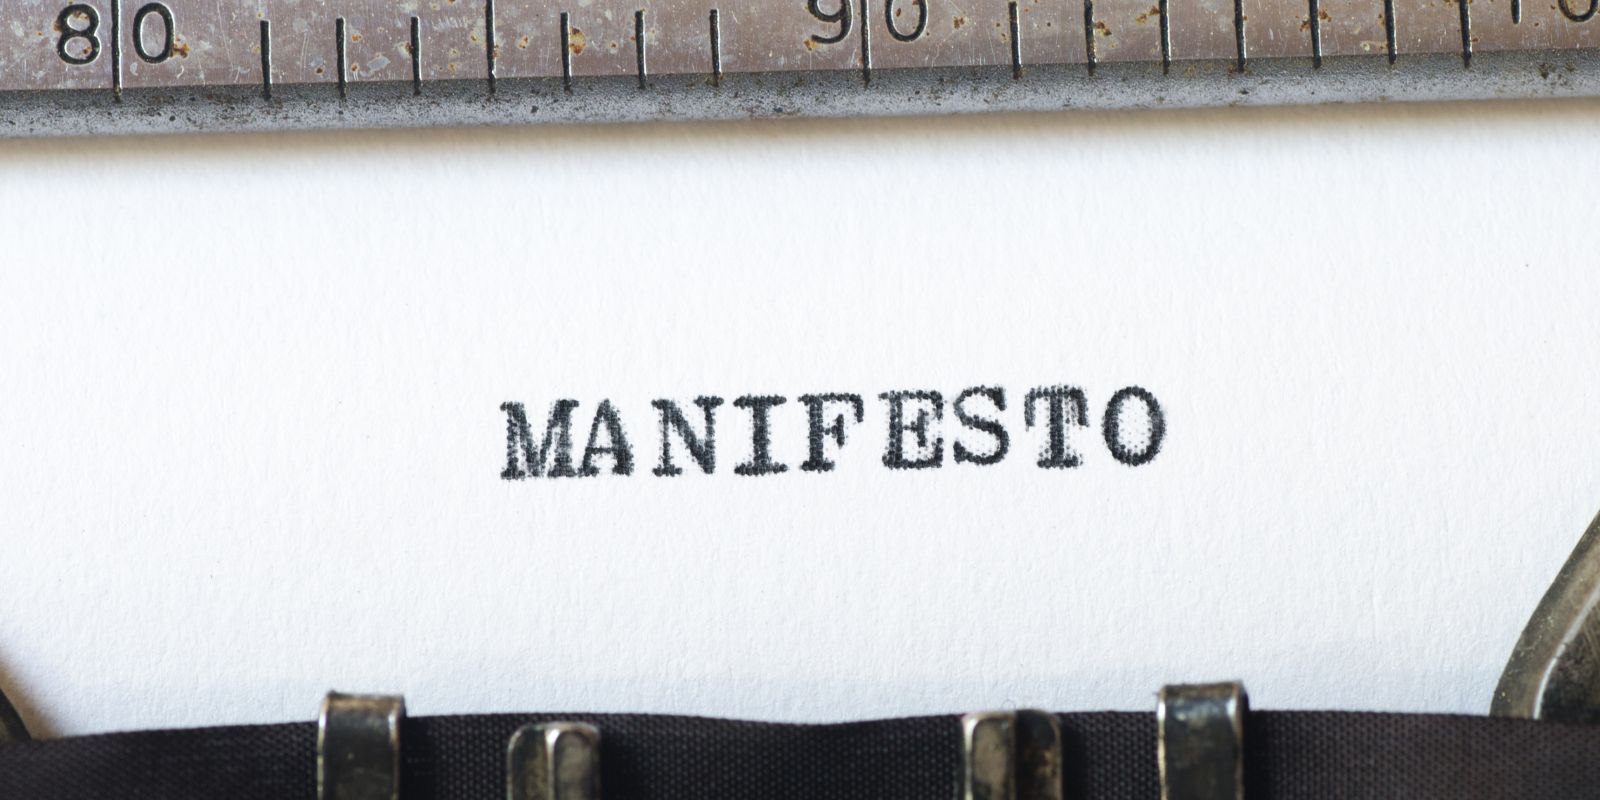 February 21st: “The Communist Manifesto” Published